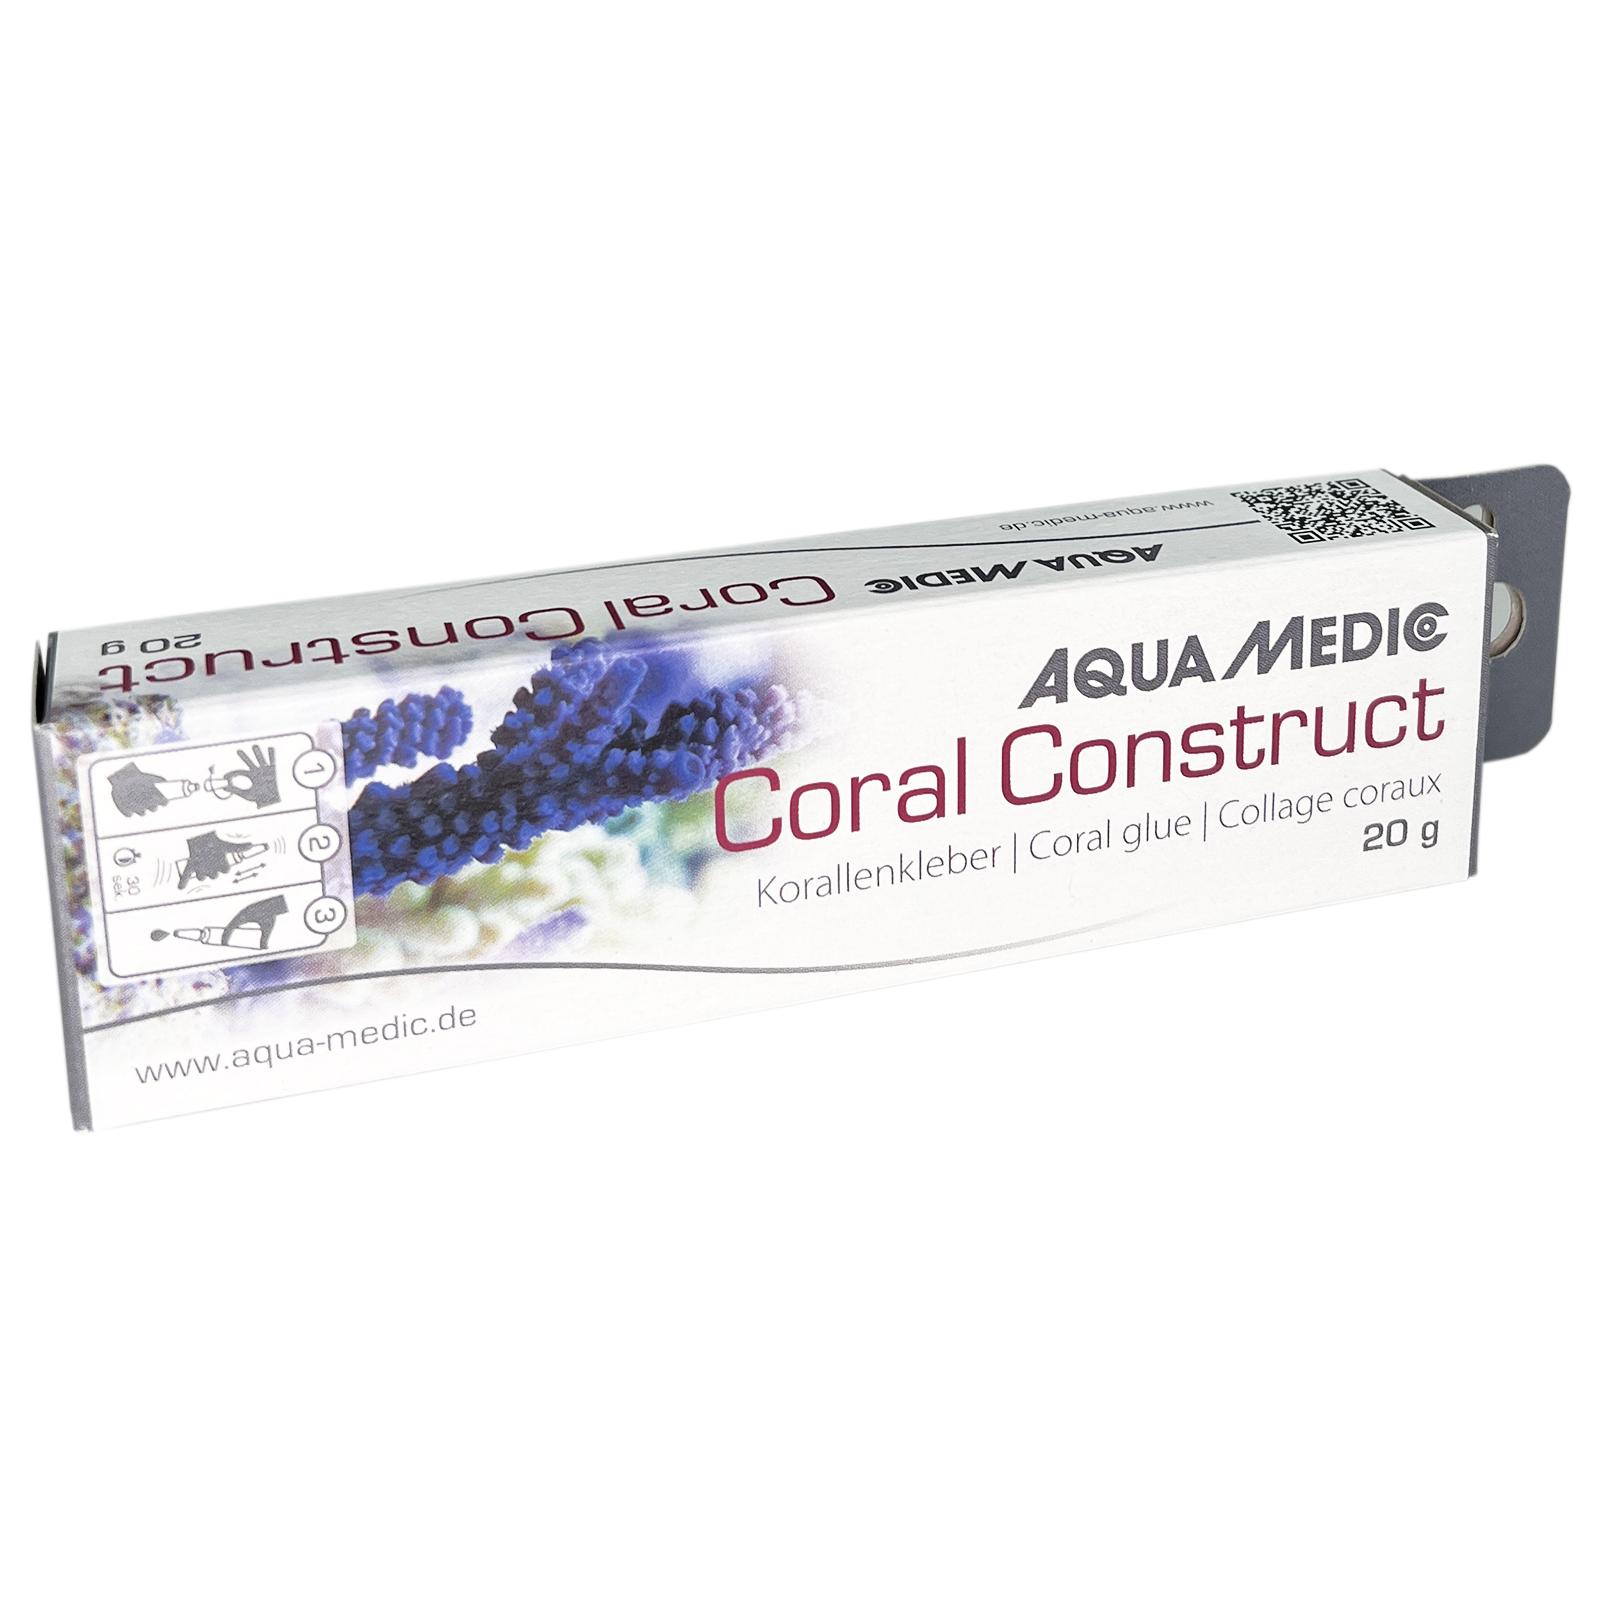 Aqua Medic Coral Construct